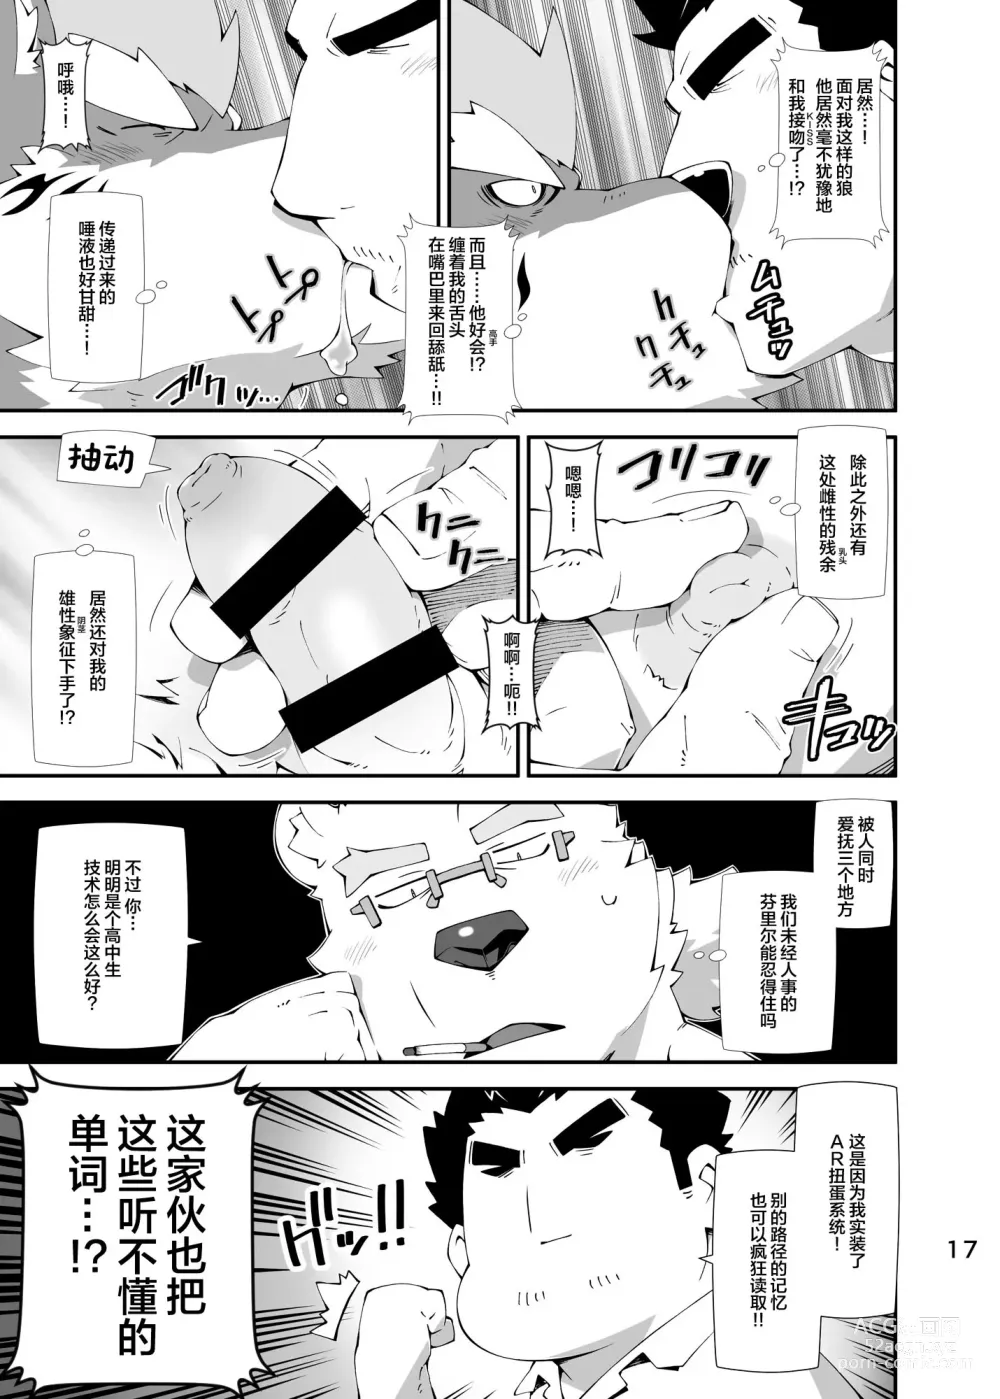 Page 16 of doujinshi Shirokuma to Fe